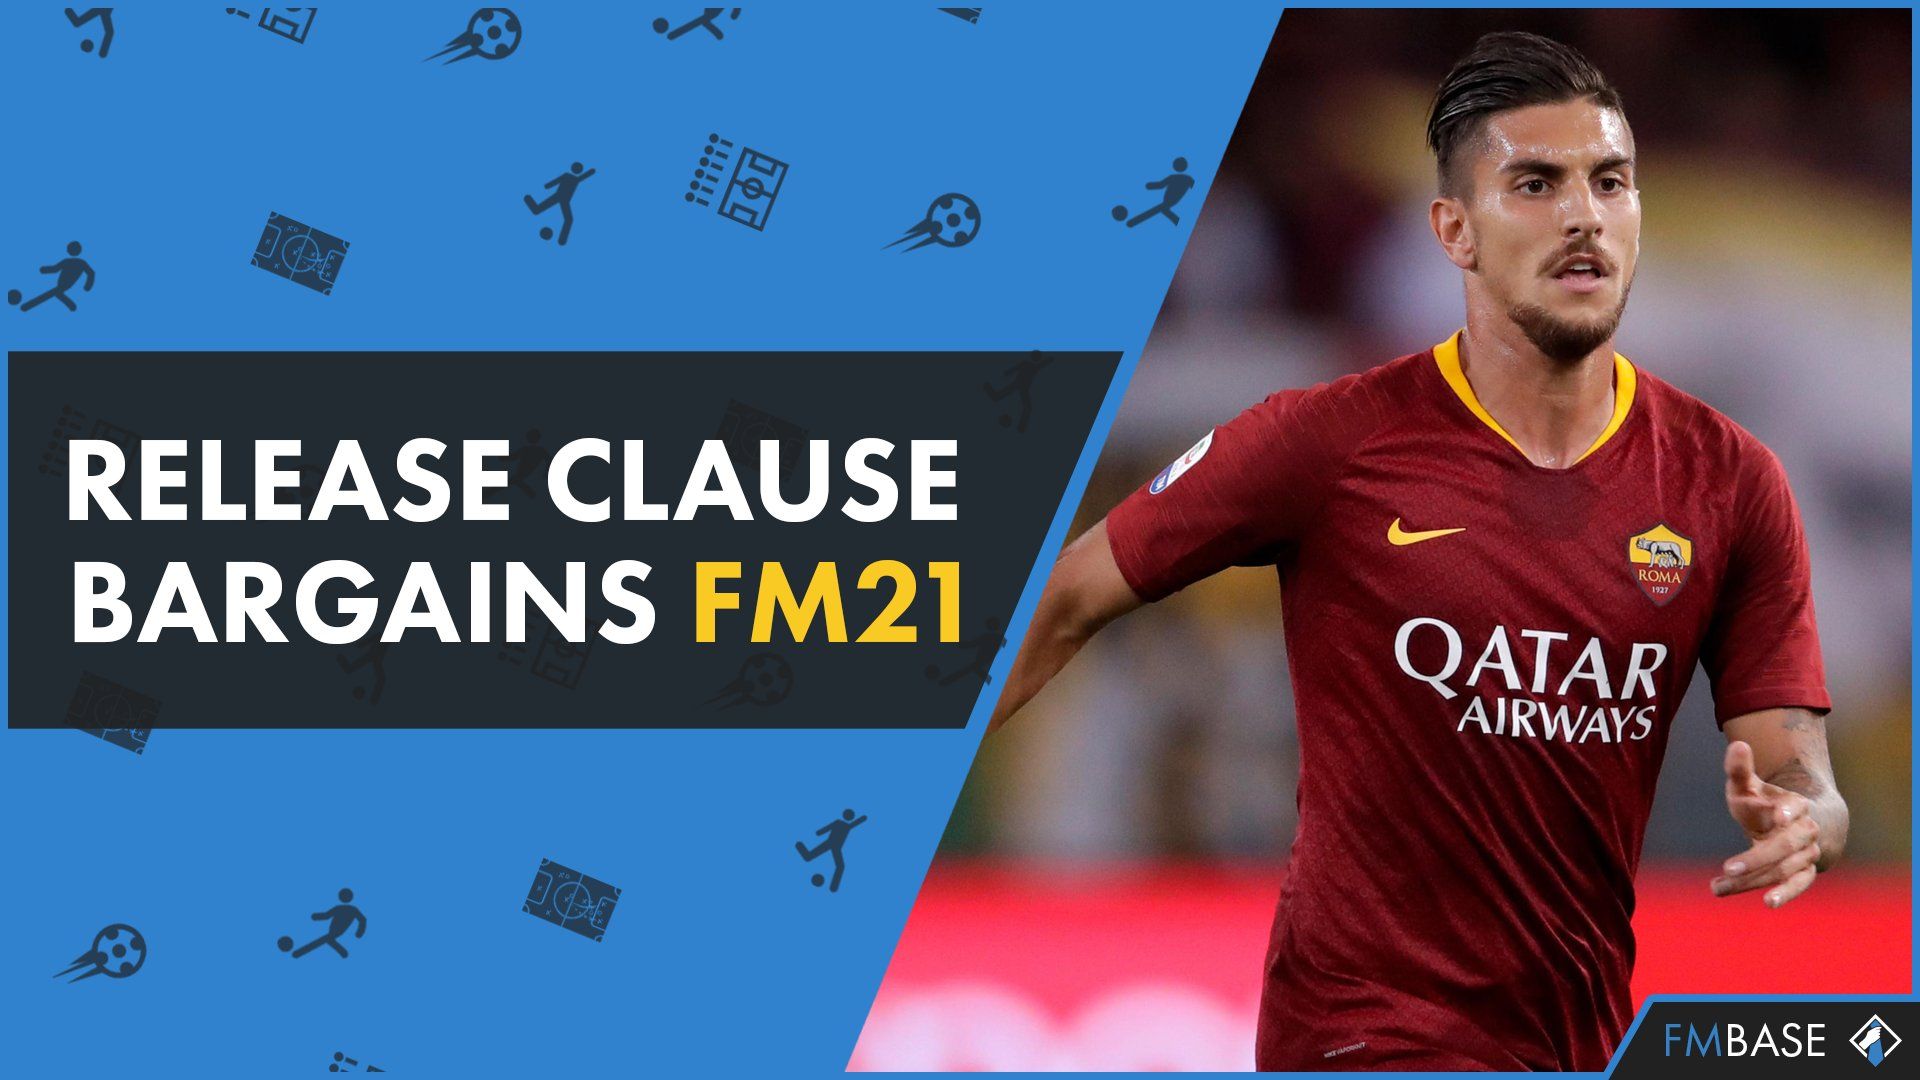 FM21 Release Clause Bargains